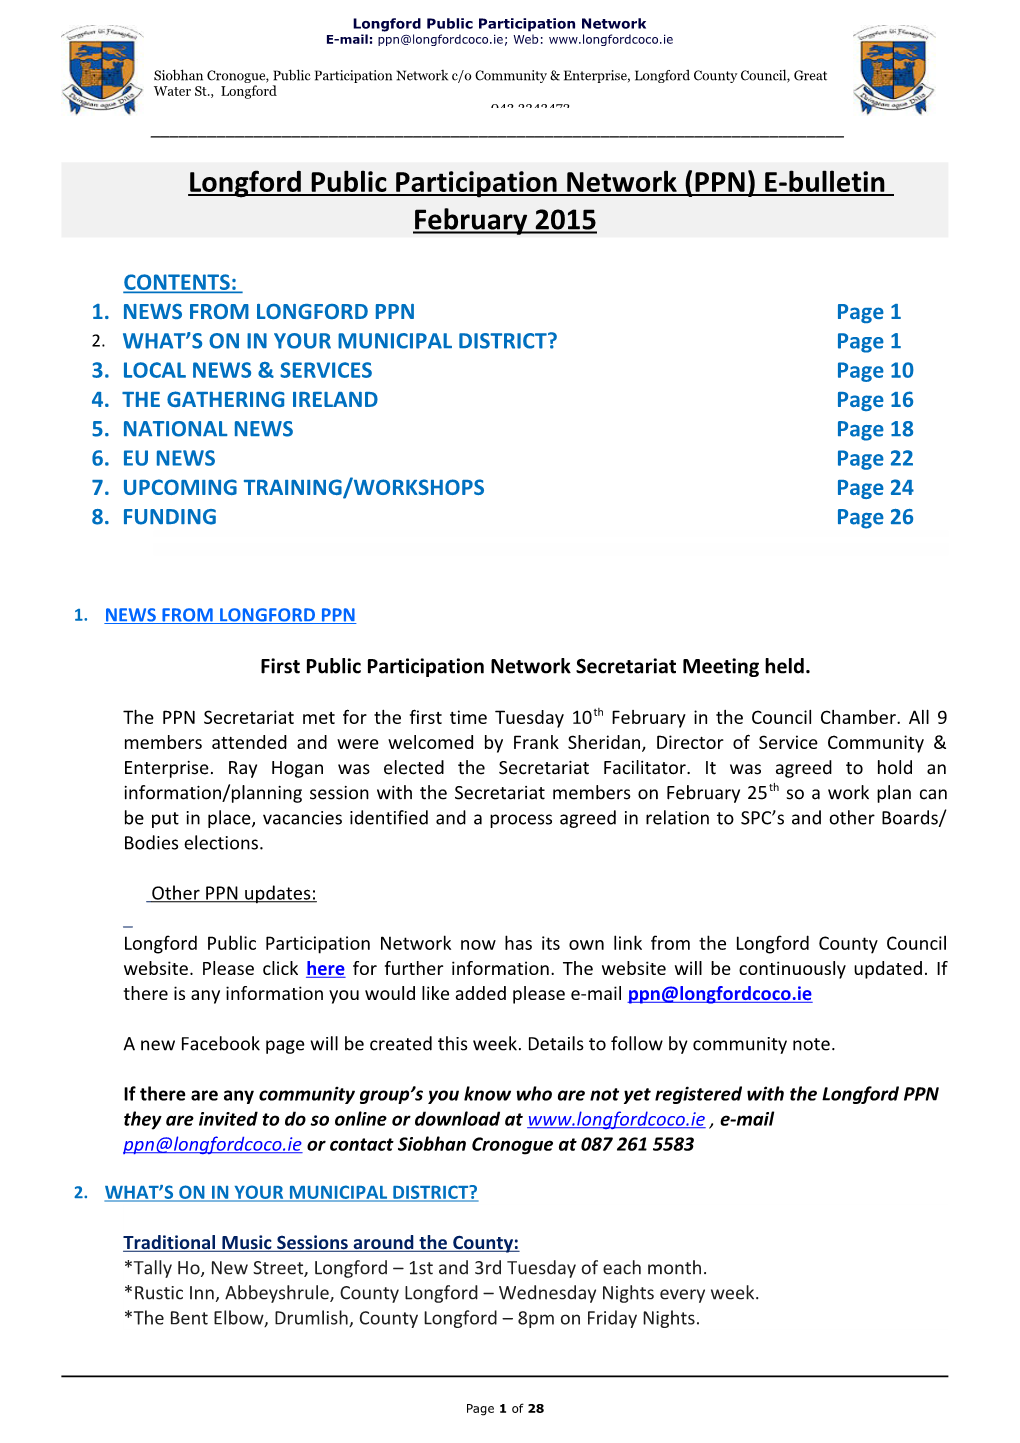 Longford Public Participation Network (PPN) E-Bulletin